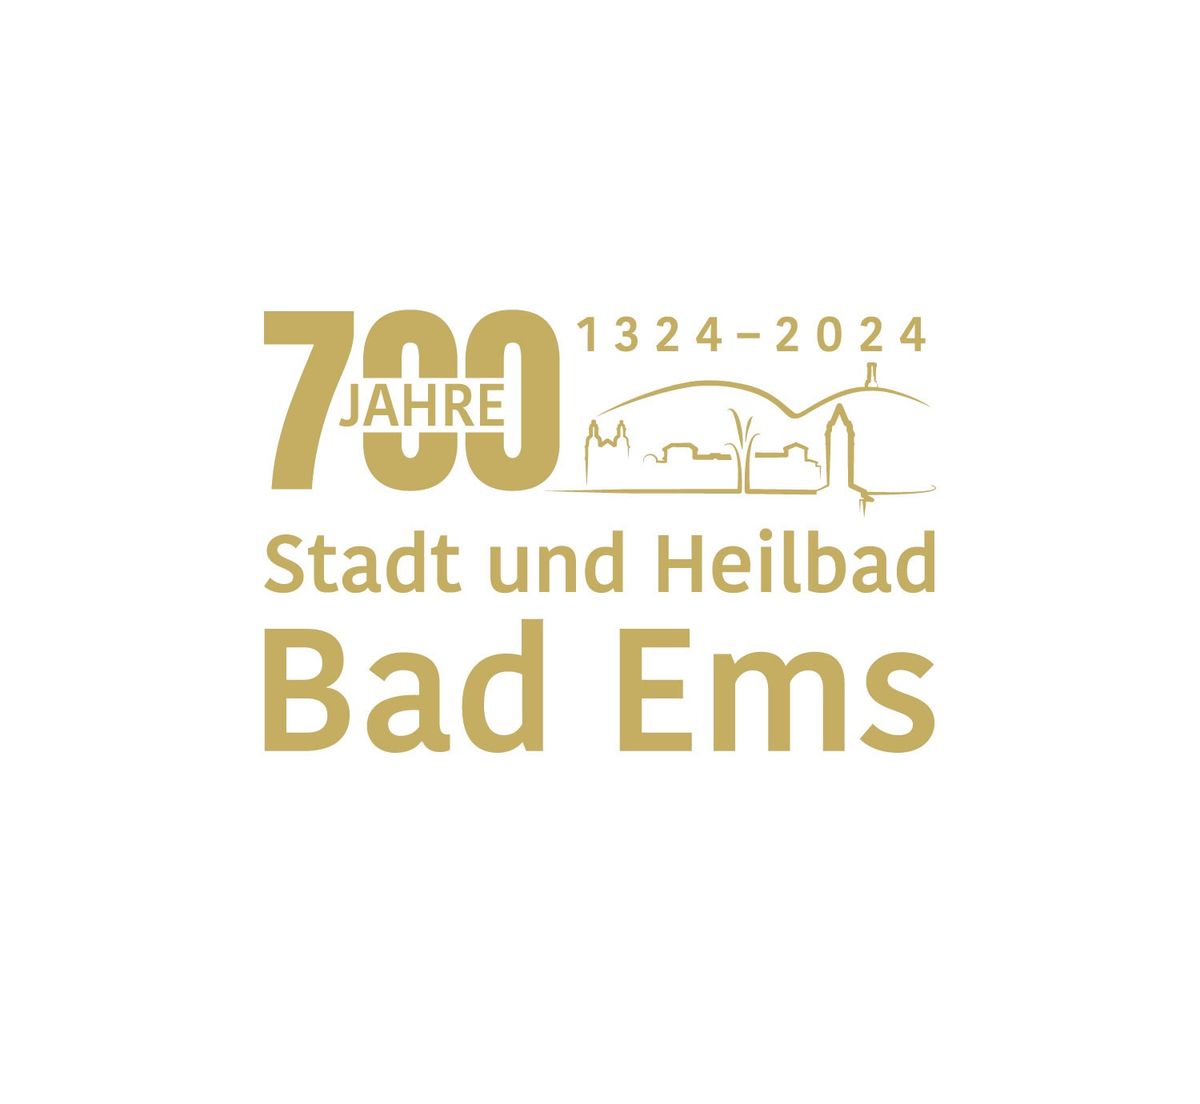 Bad Ems feiert - 700 Jahre Stadt & Heilbad 